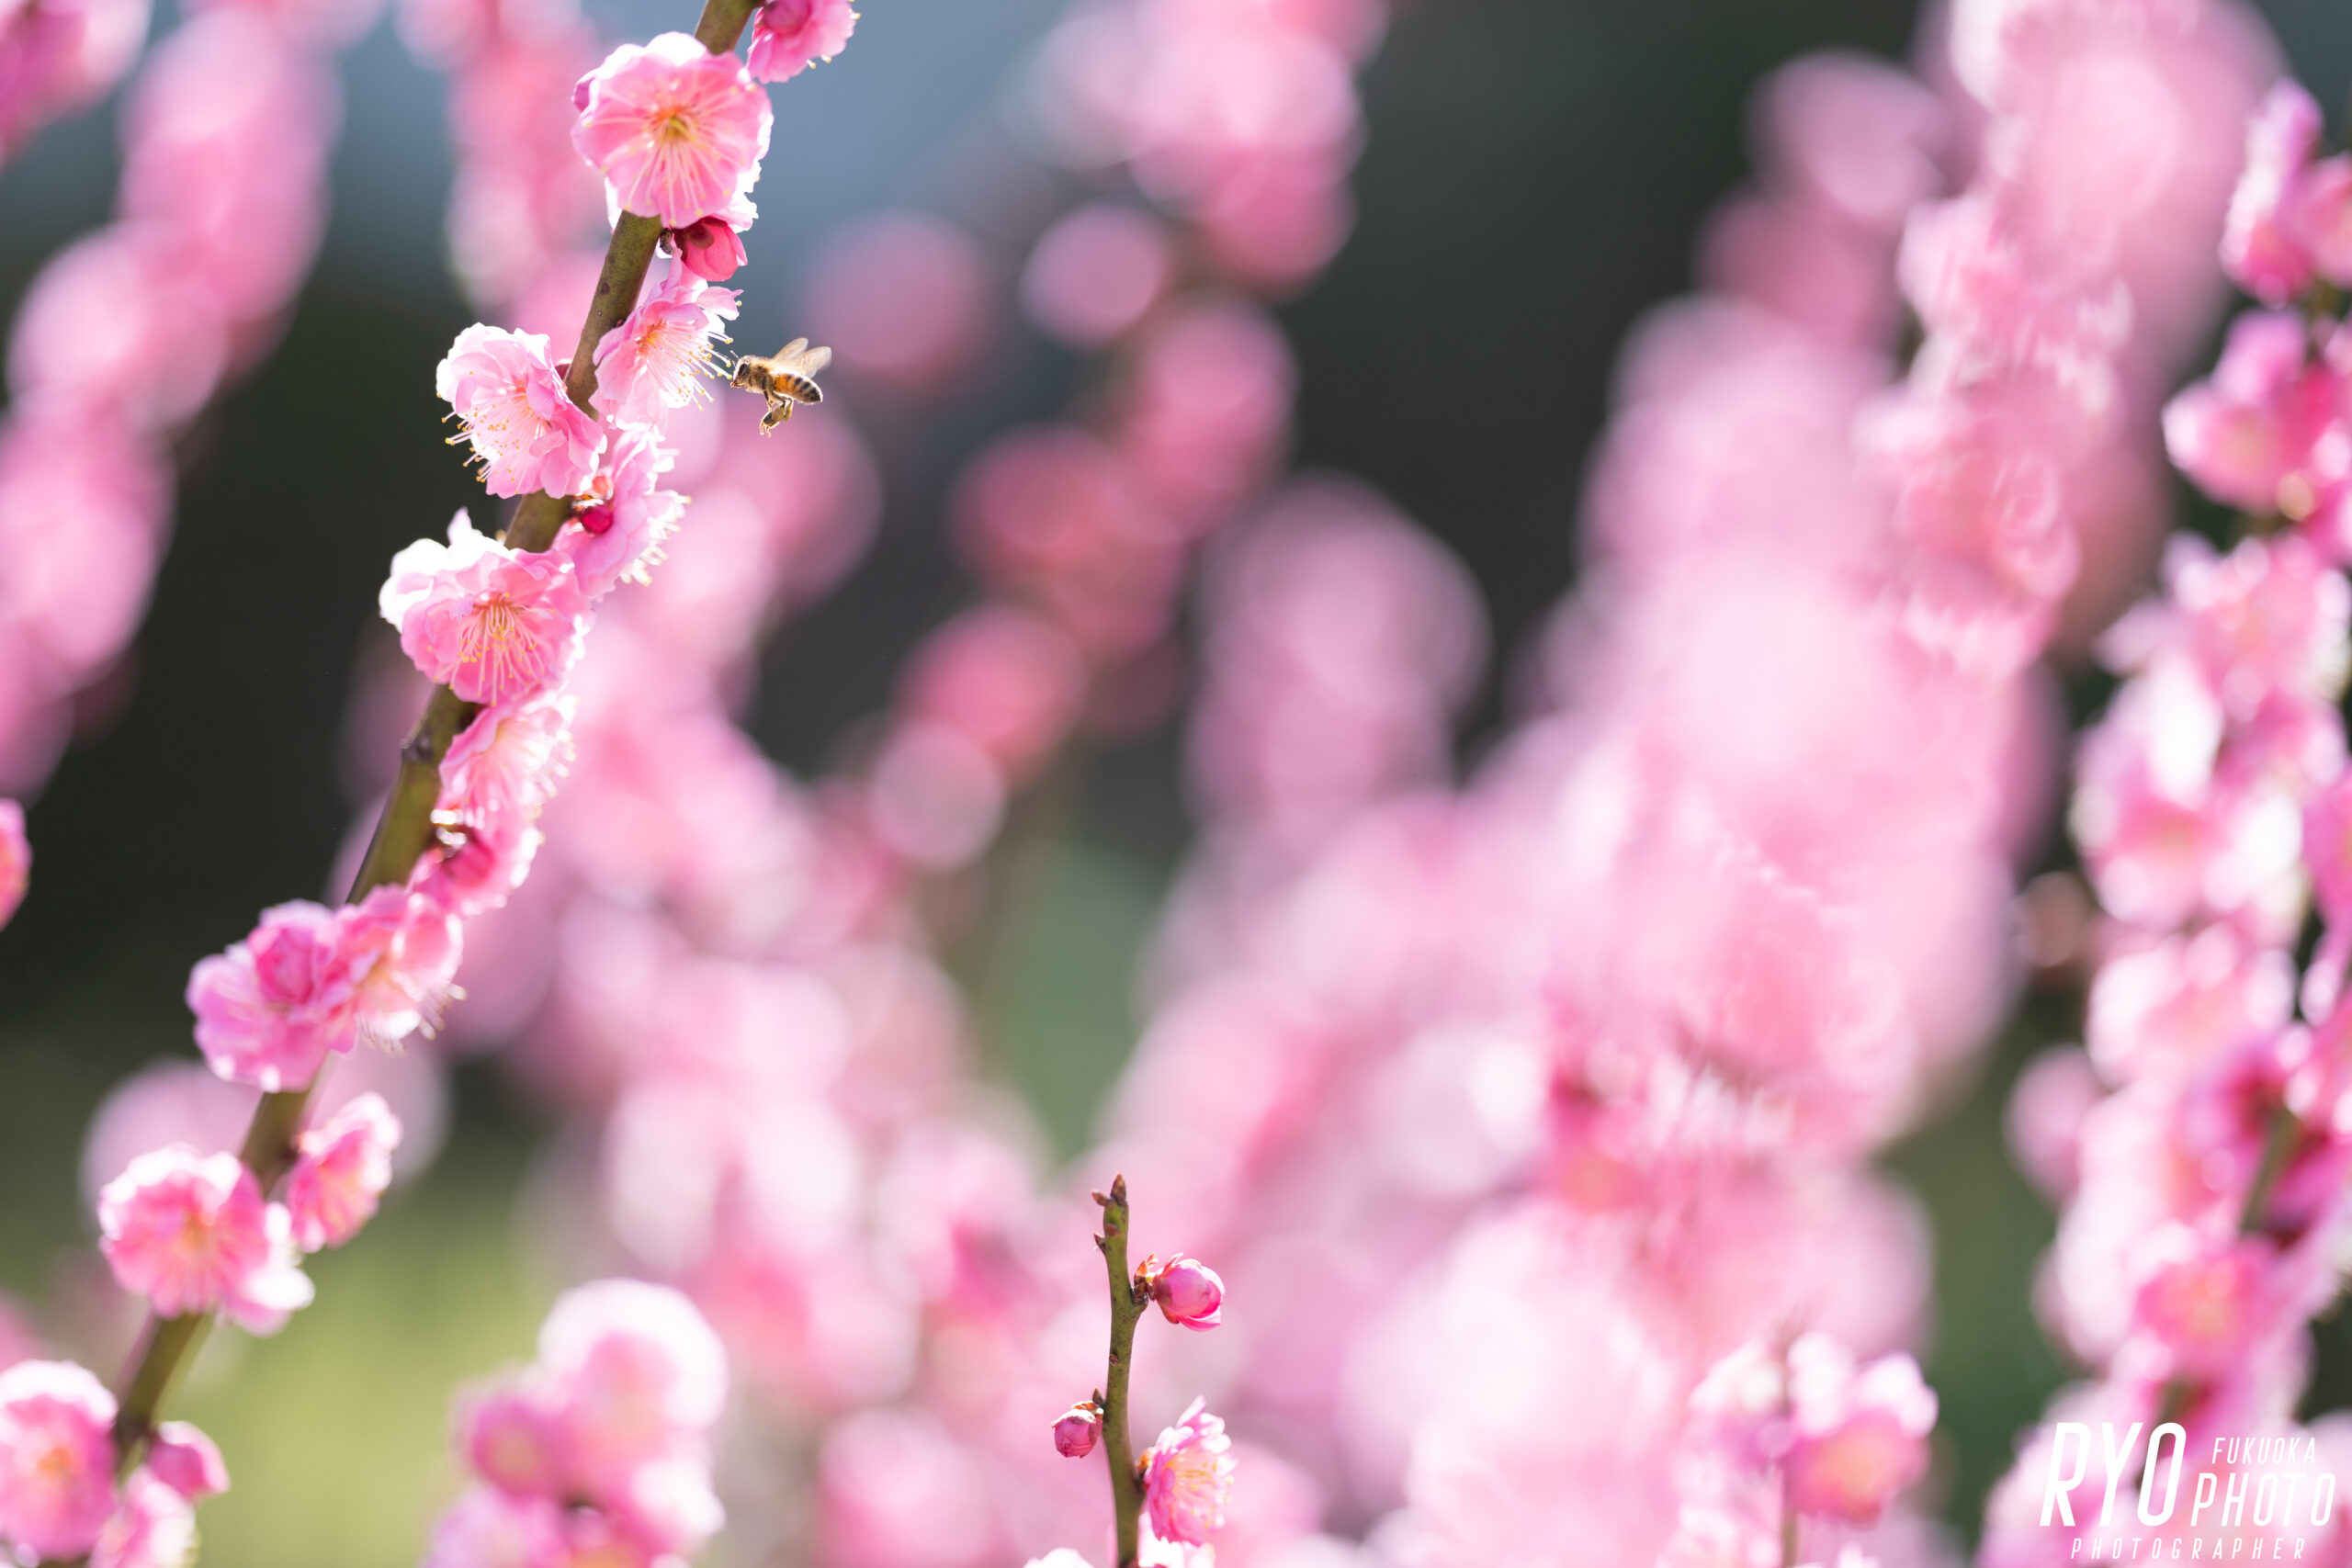 大牟田市の迎賓館 三井港倶楽部の庭の梅の写真